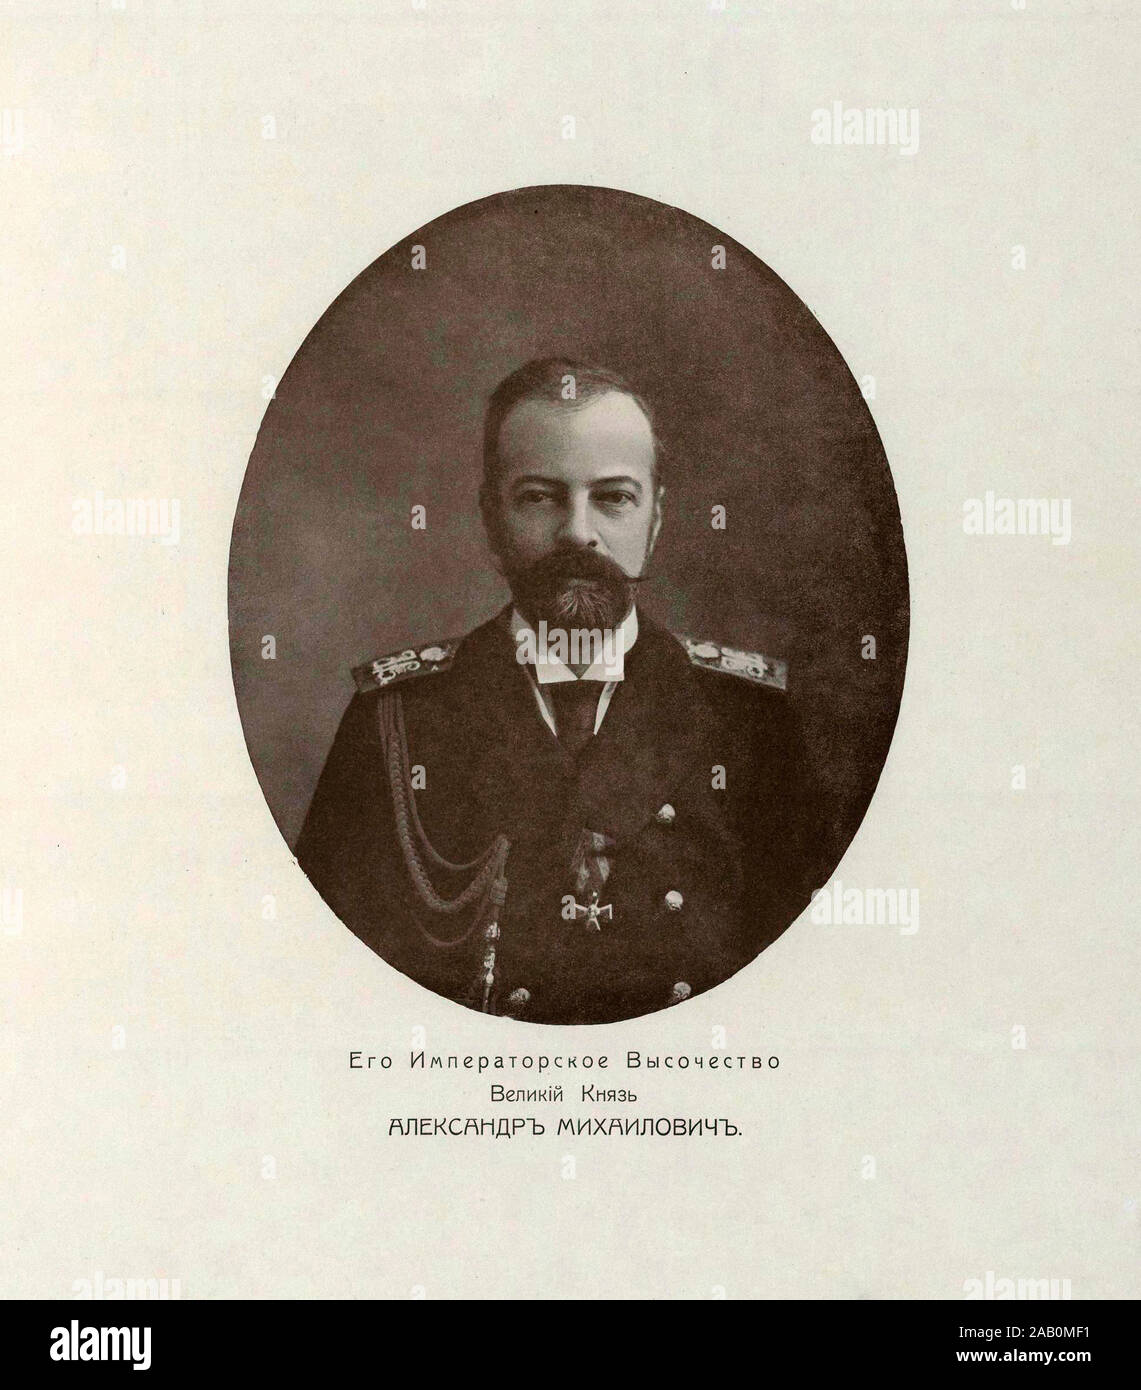 Grand-duc Alexandre Mikhaïlovitch de Russie (1866 - 1933) était un dynast de l'Empire russe, un officier de marine, un auteur, explorer, le beau-frère Banque D'Images